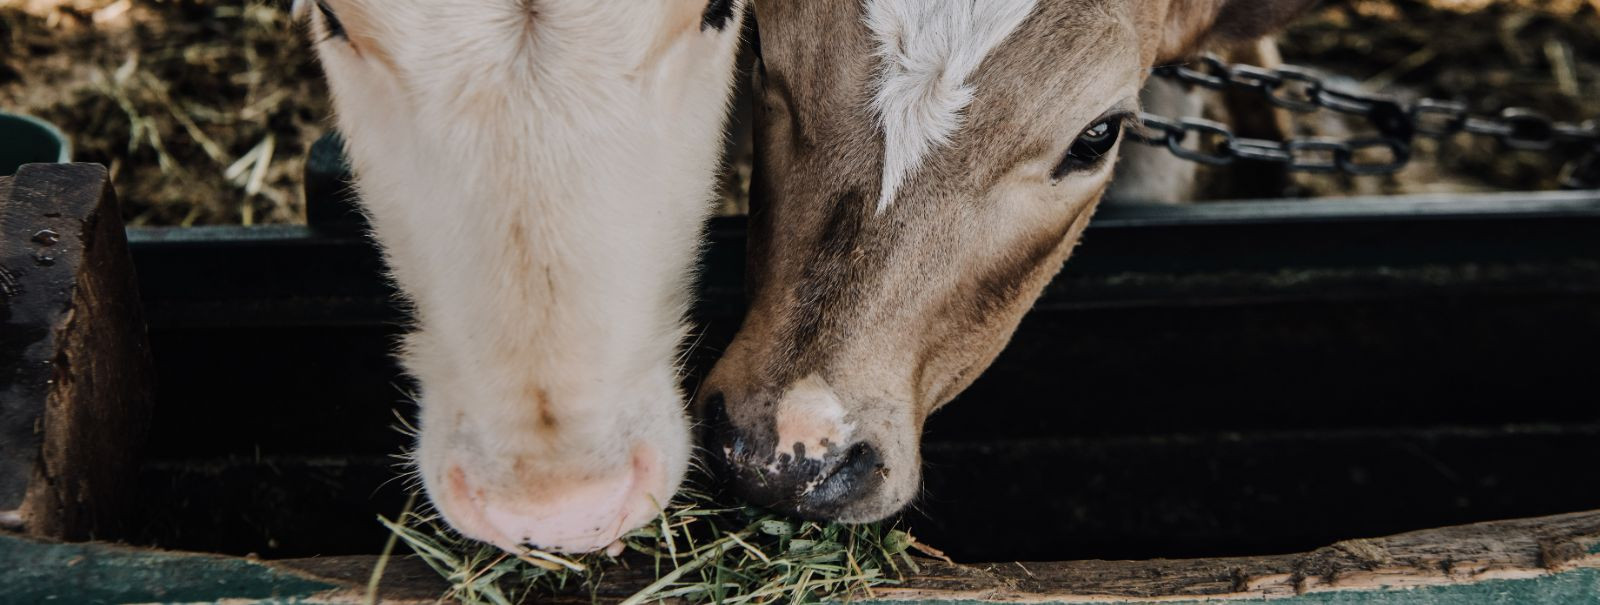 Keskkonnasõbralik sööt viitab kariloomade söödale, mis on toodetud viisil, mis minimeerib keskkonnamõju, toetab loomade tervist ja heaolu ning aitab kaasa jätku